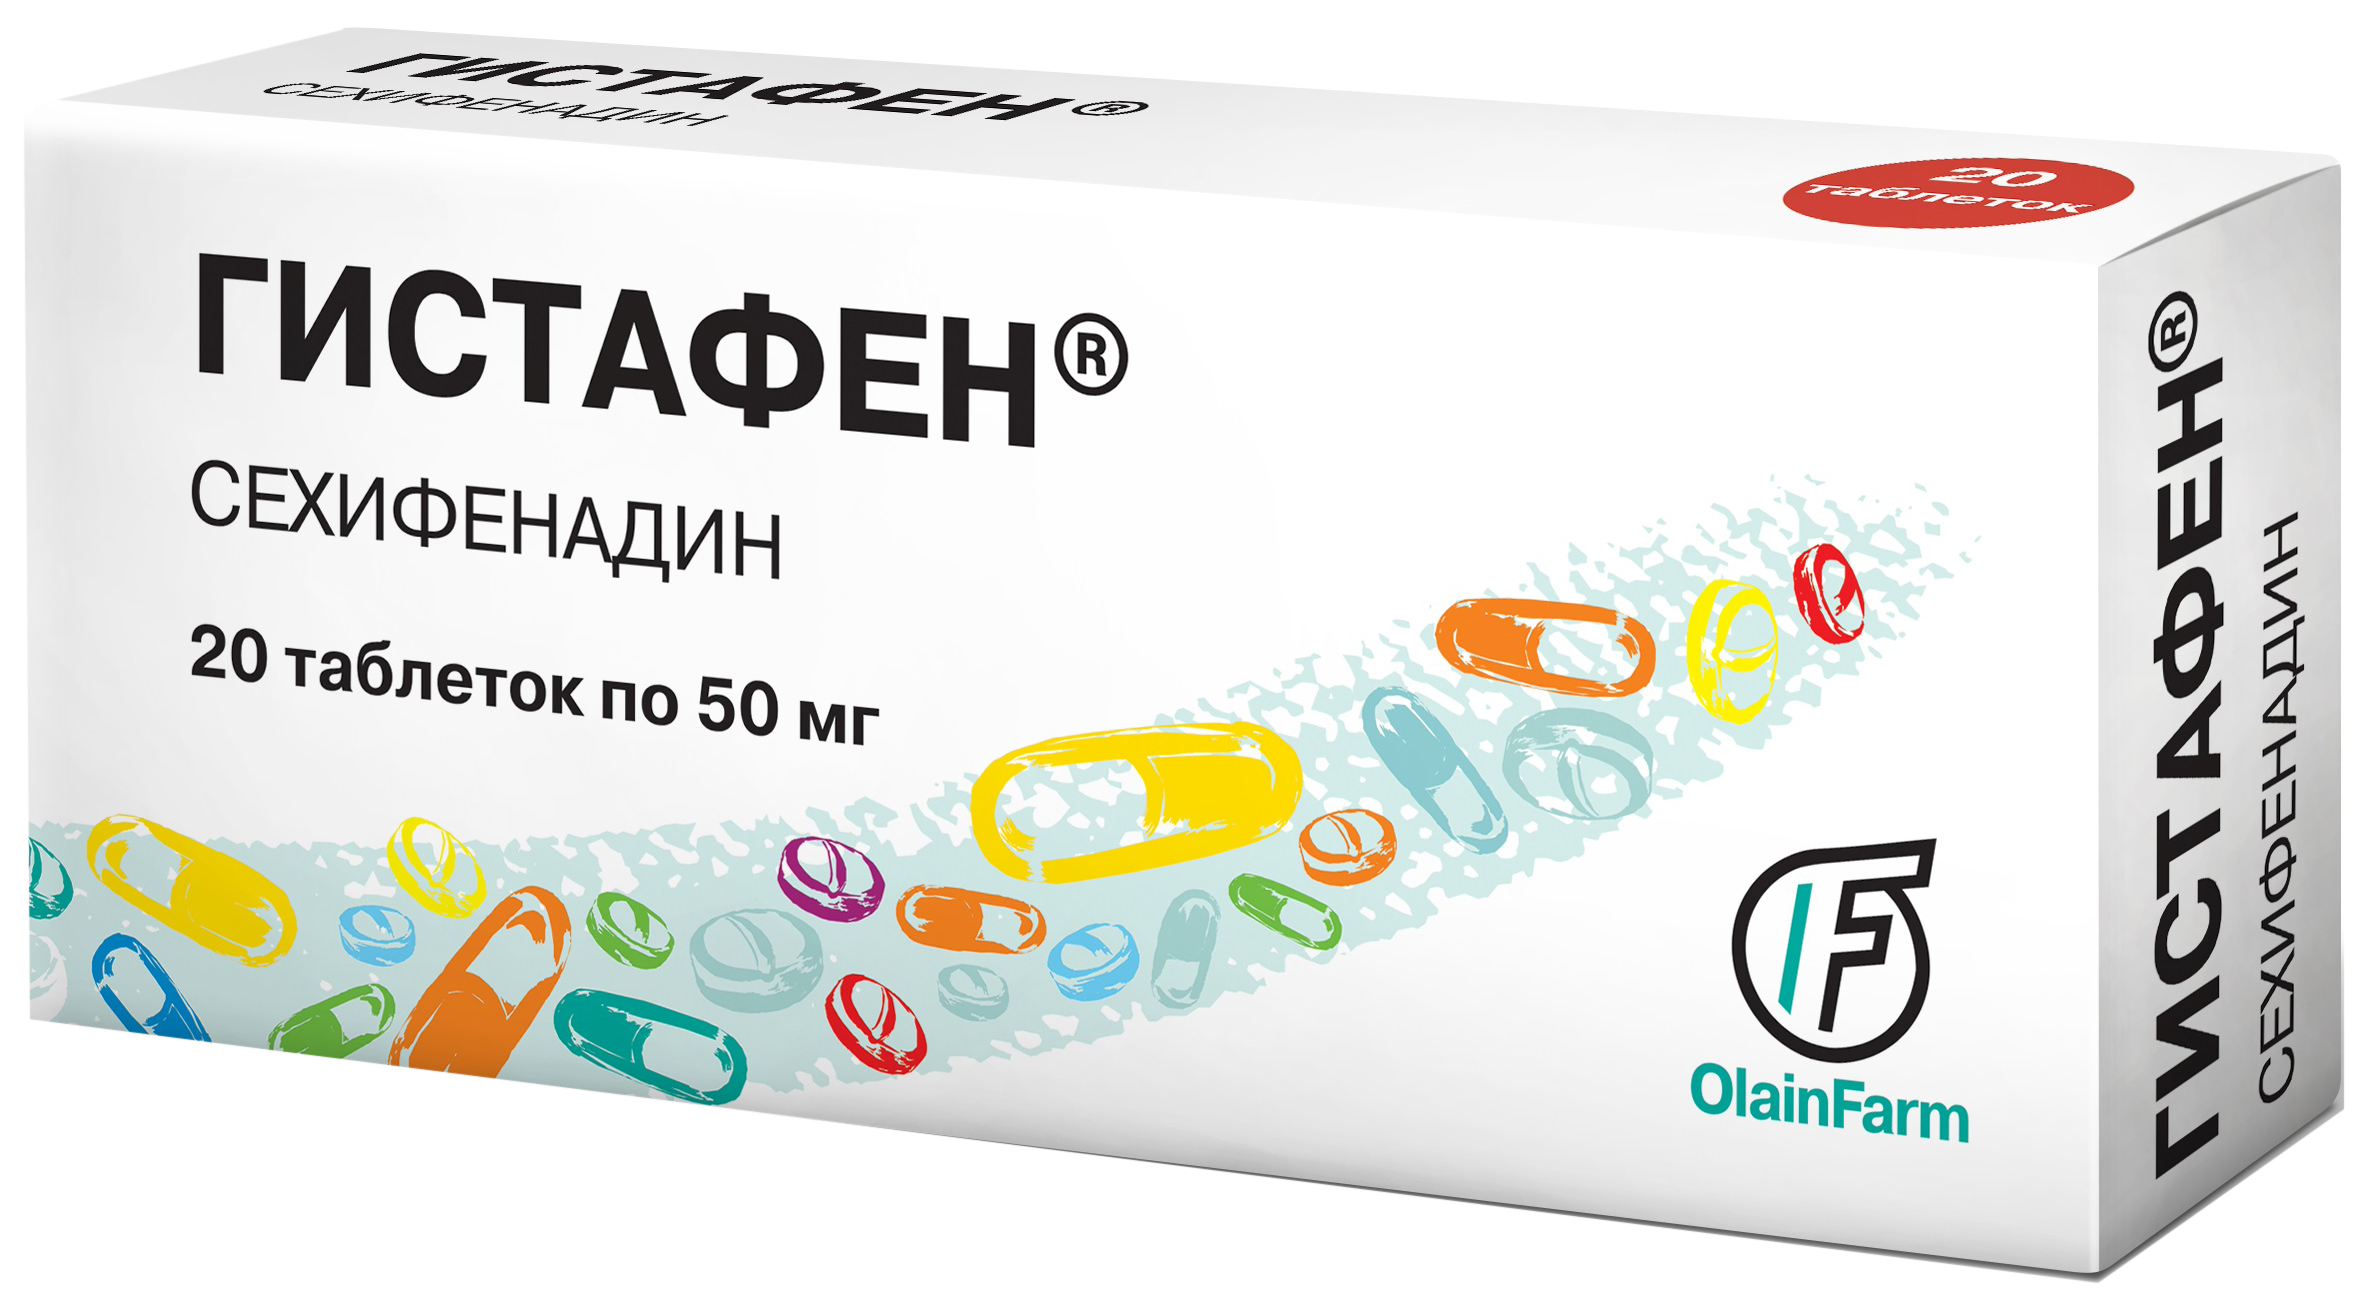 Купить Гистафен таблетки 50 мг 20 шт., Olainfarm